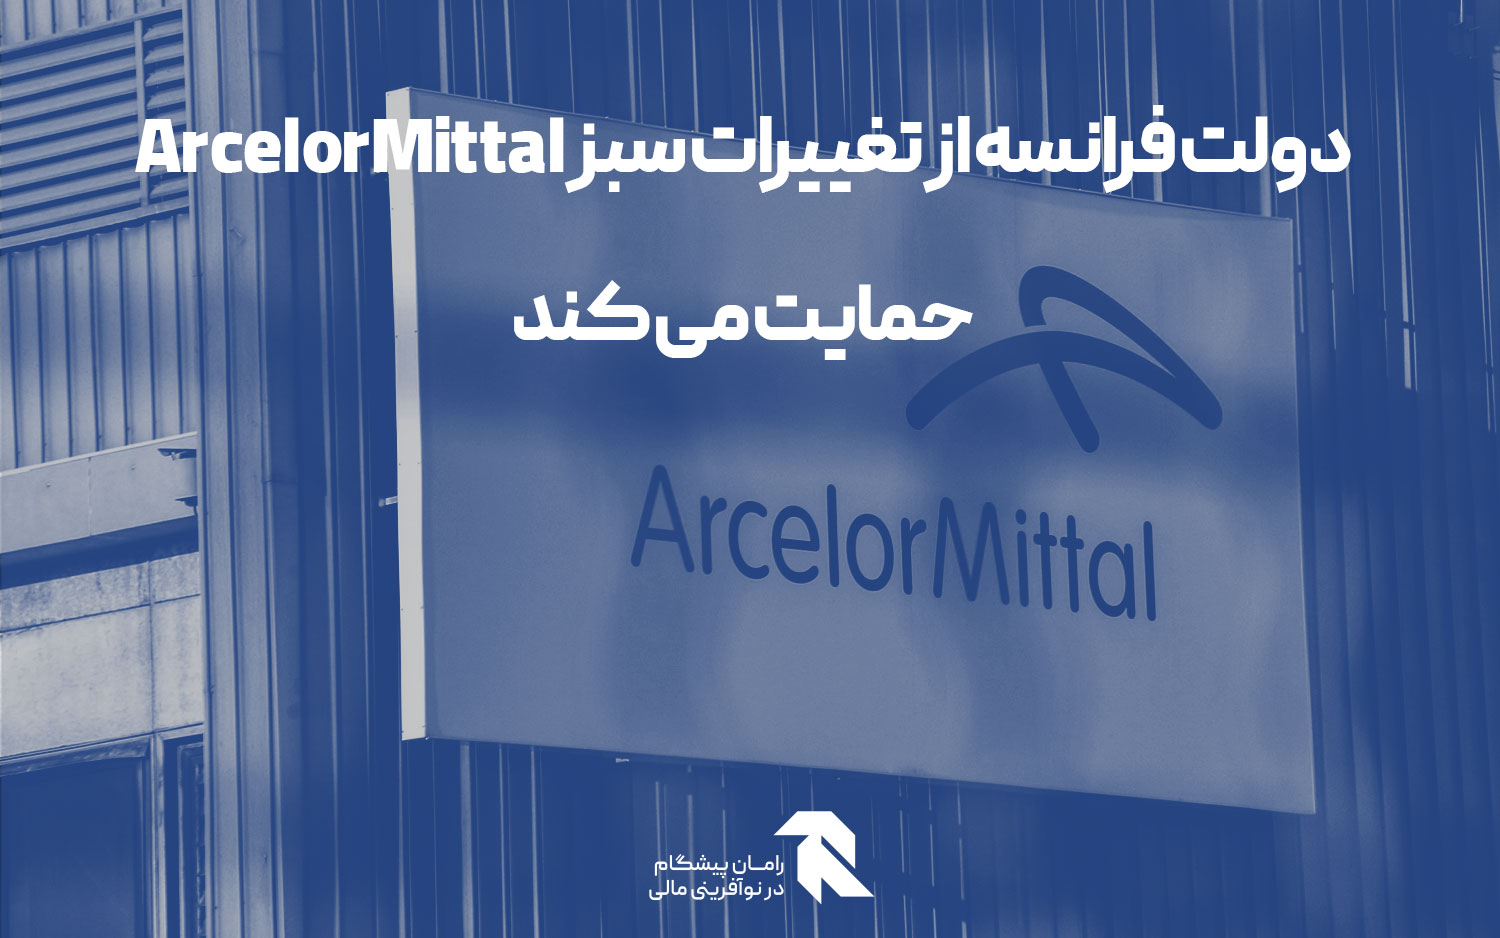 دولت فرانسه از تغییرات سبز ArcelorMittal حمایت می کند